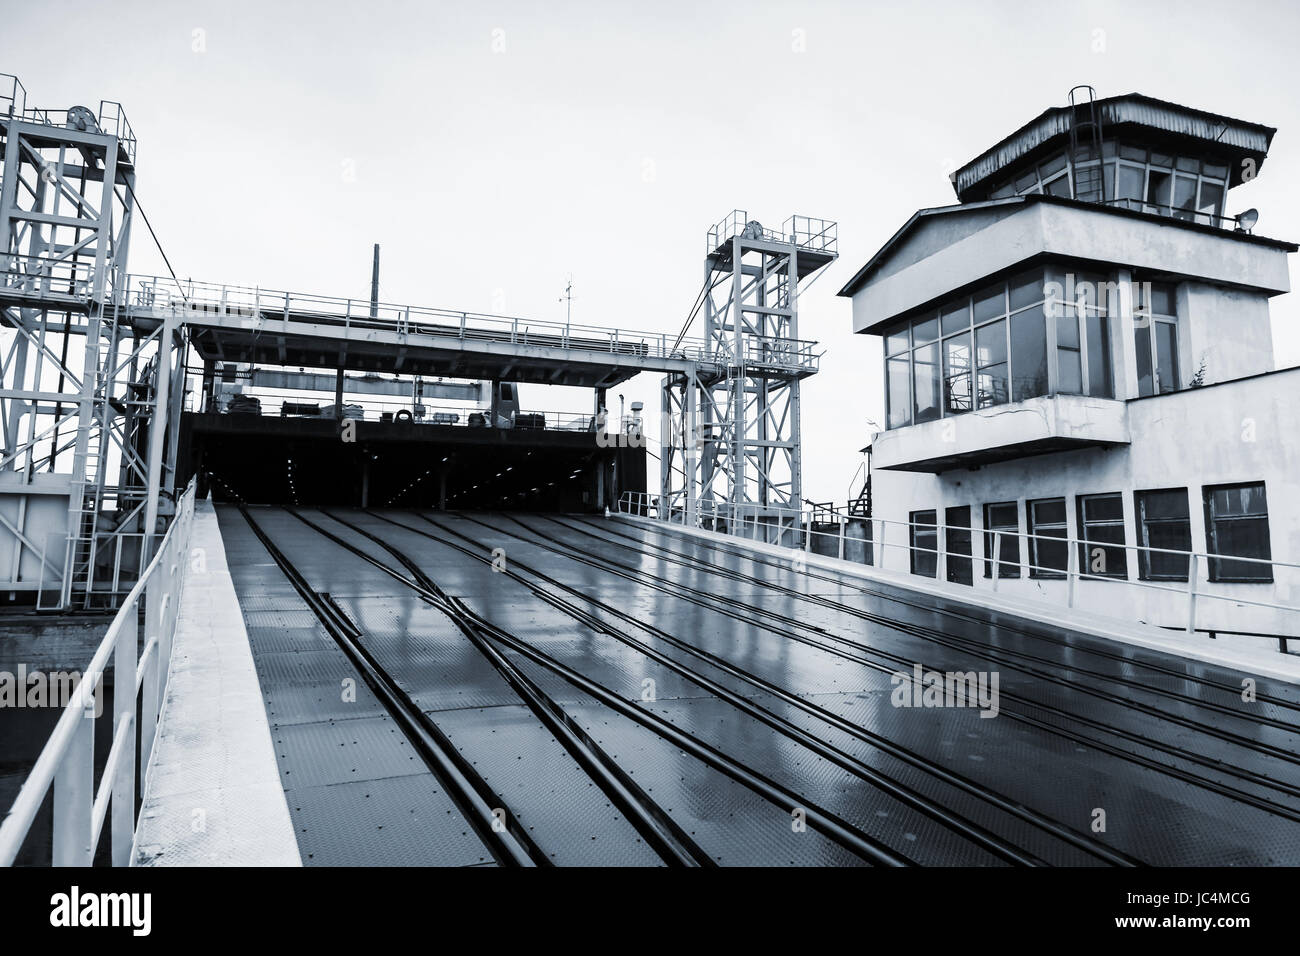 Chemin de fer ouverte pour rampe de chargement des navires rouliers industriels. Varna, Bulgarie complexe traversier-rail. Photo dans les tons bleus Banque D'Images